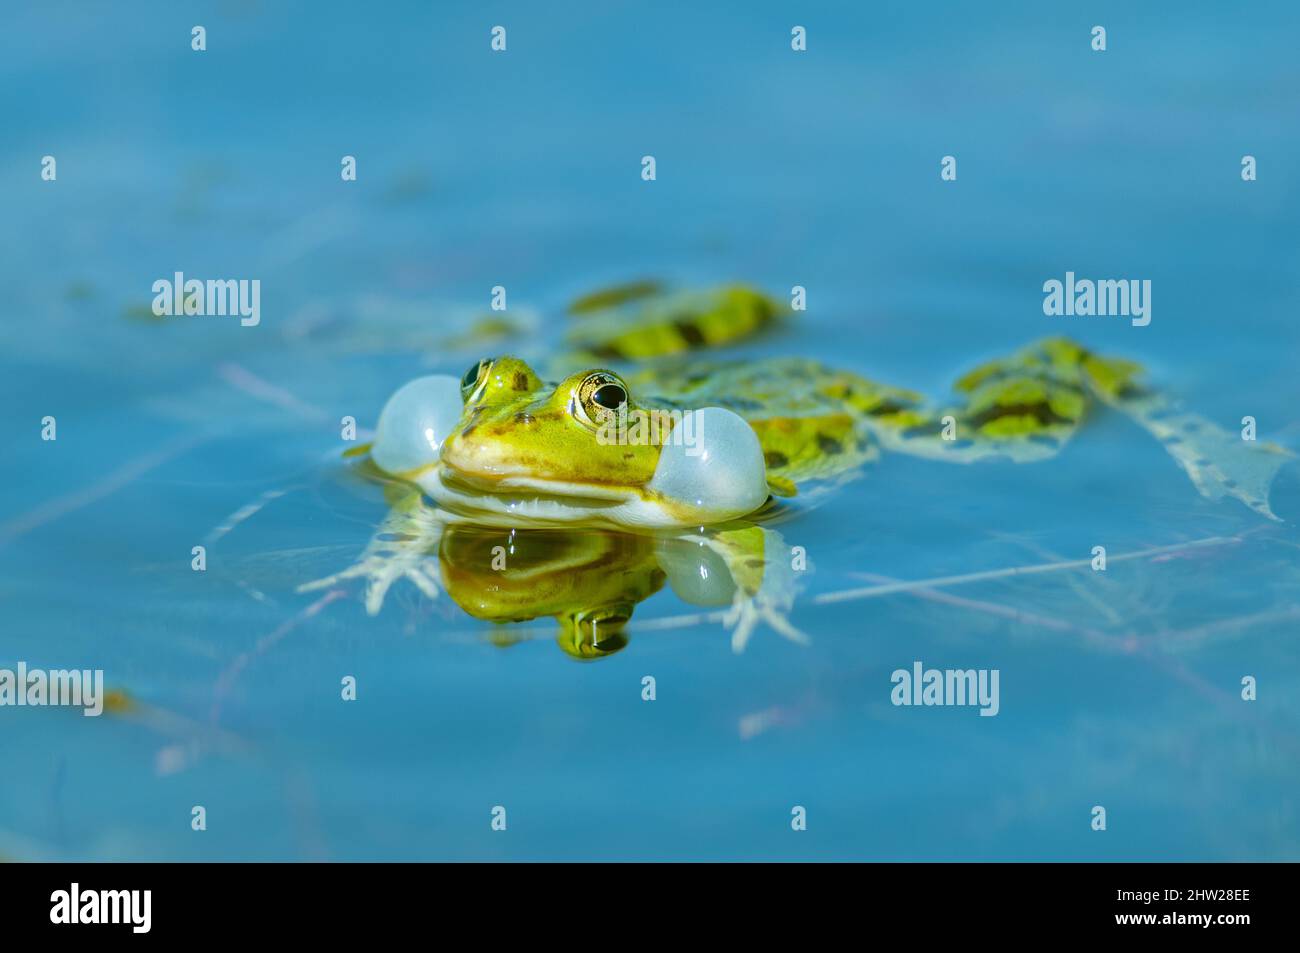 Im Frühling in einem Teich. Schwarzkopffrosch ( Rana ridibunda ) in einem  Teich im Frühjahr. Frosch emittiert seinen Bass-Sound durch Aufblasen  Stockfotografie - Alamy